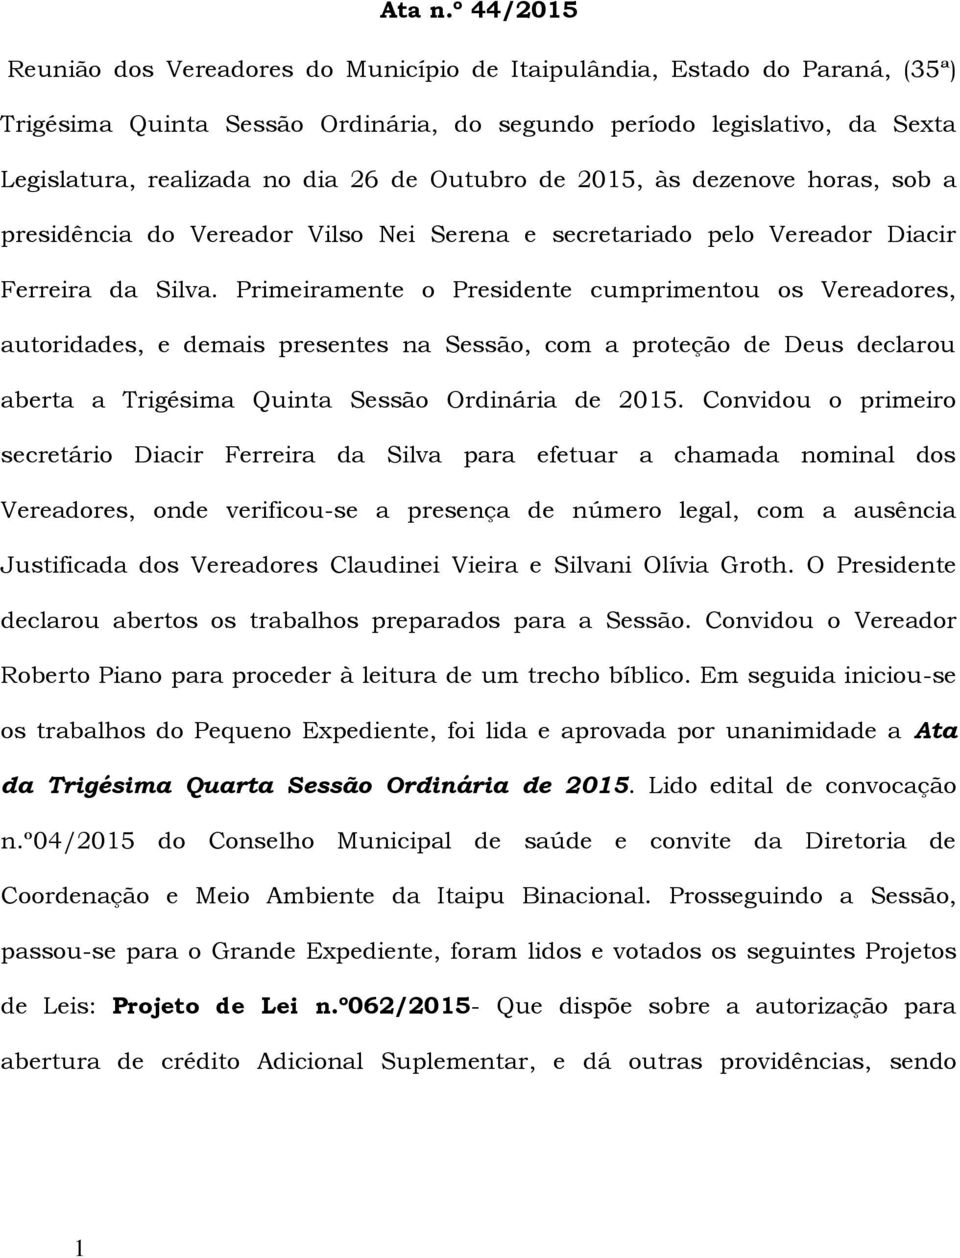 Outubro de 2015, às dezenove horas, sob a presidência do Vereador Vilso Nei Serena e secretariado pelo Vereador Diacir Ferreira da Silva.